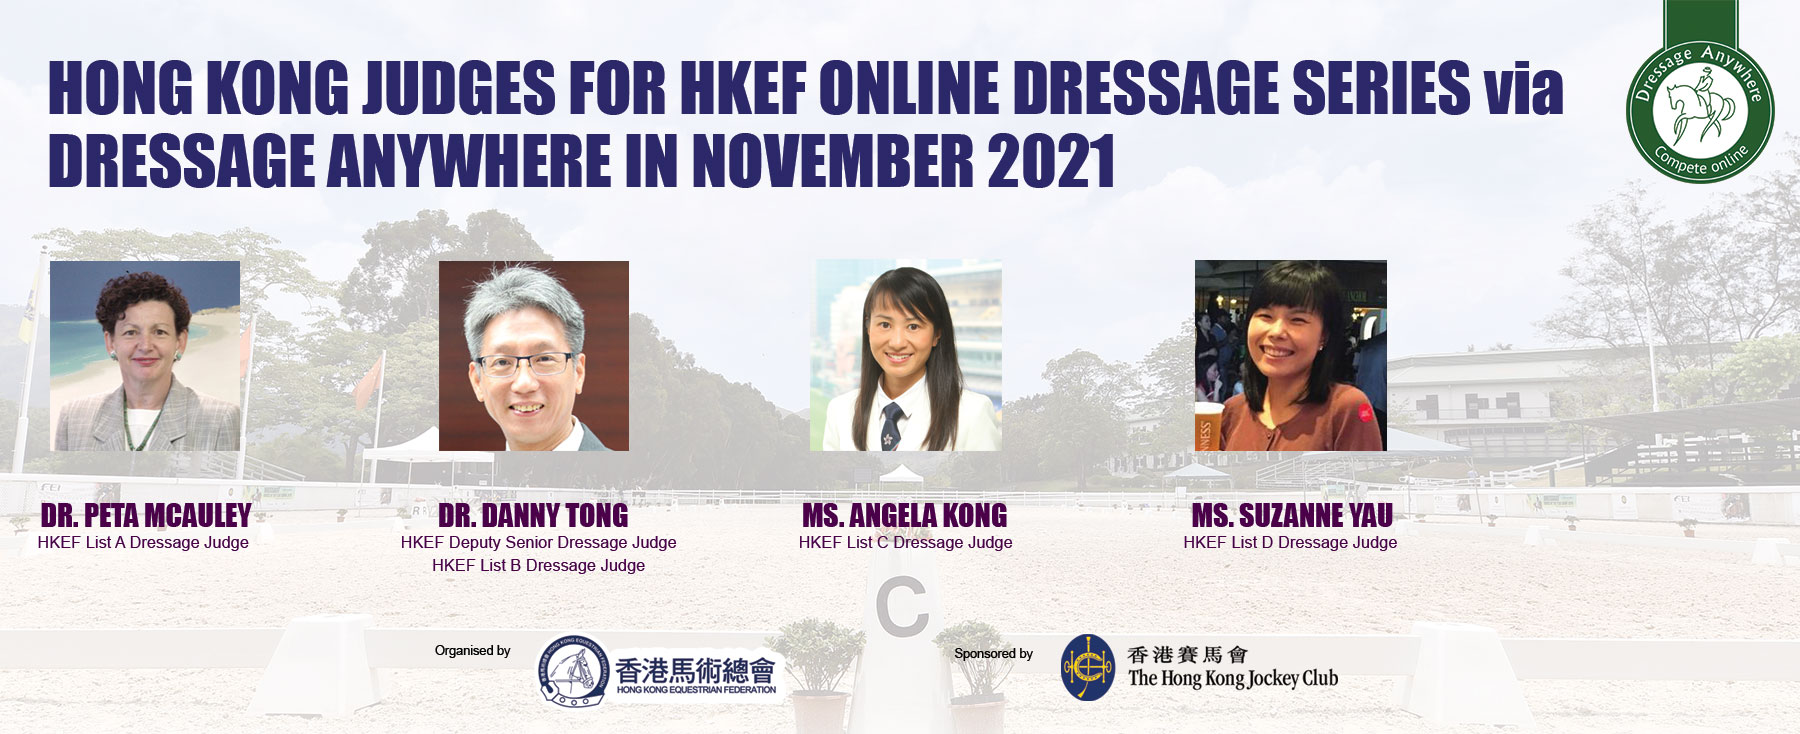 HKEF-Judges-at-the-Online-Dressage-Series-in-November